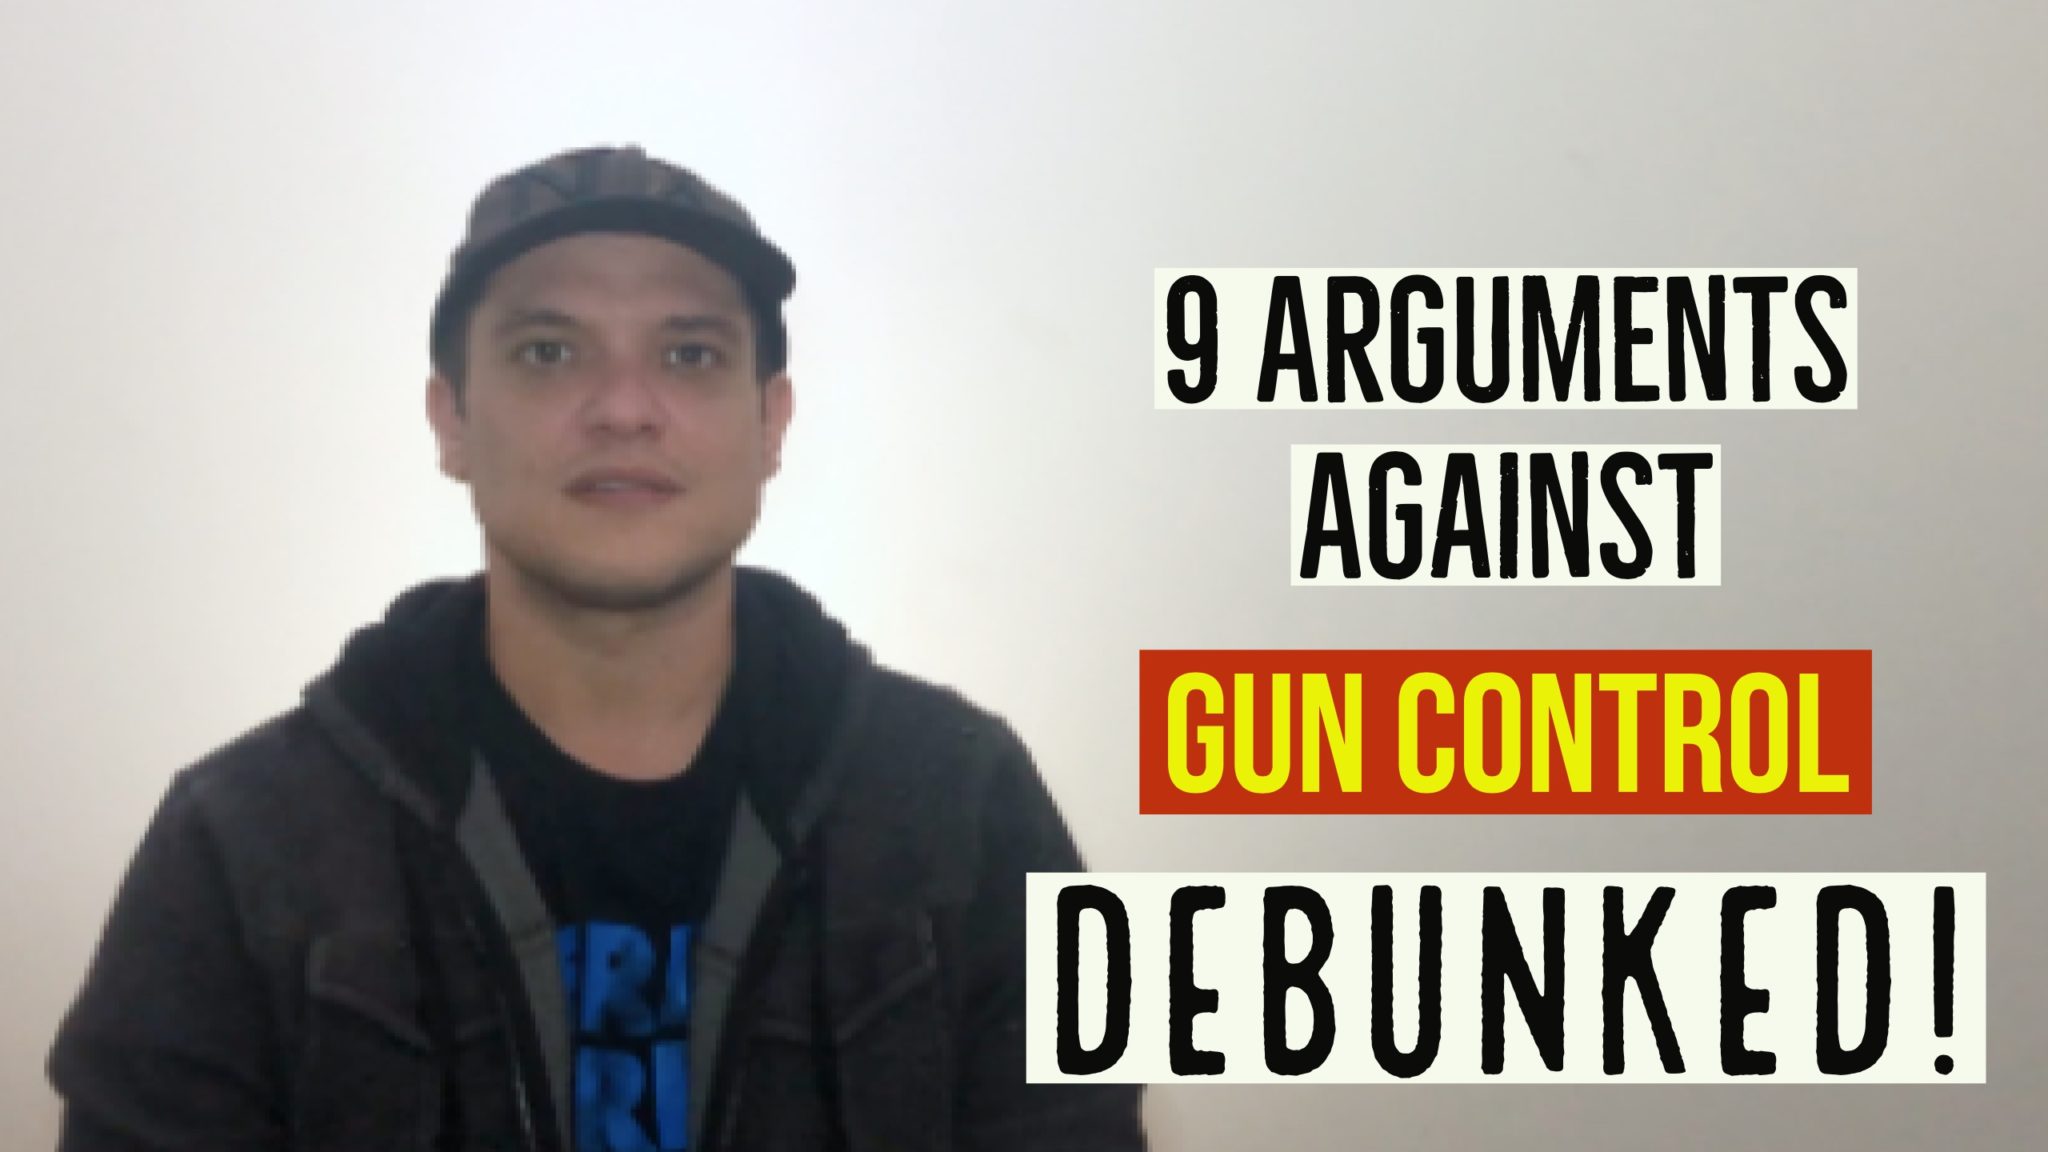 9 arguments against gun control debunked * Kyle McMahon video